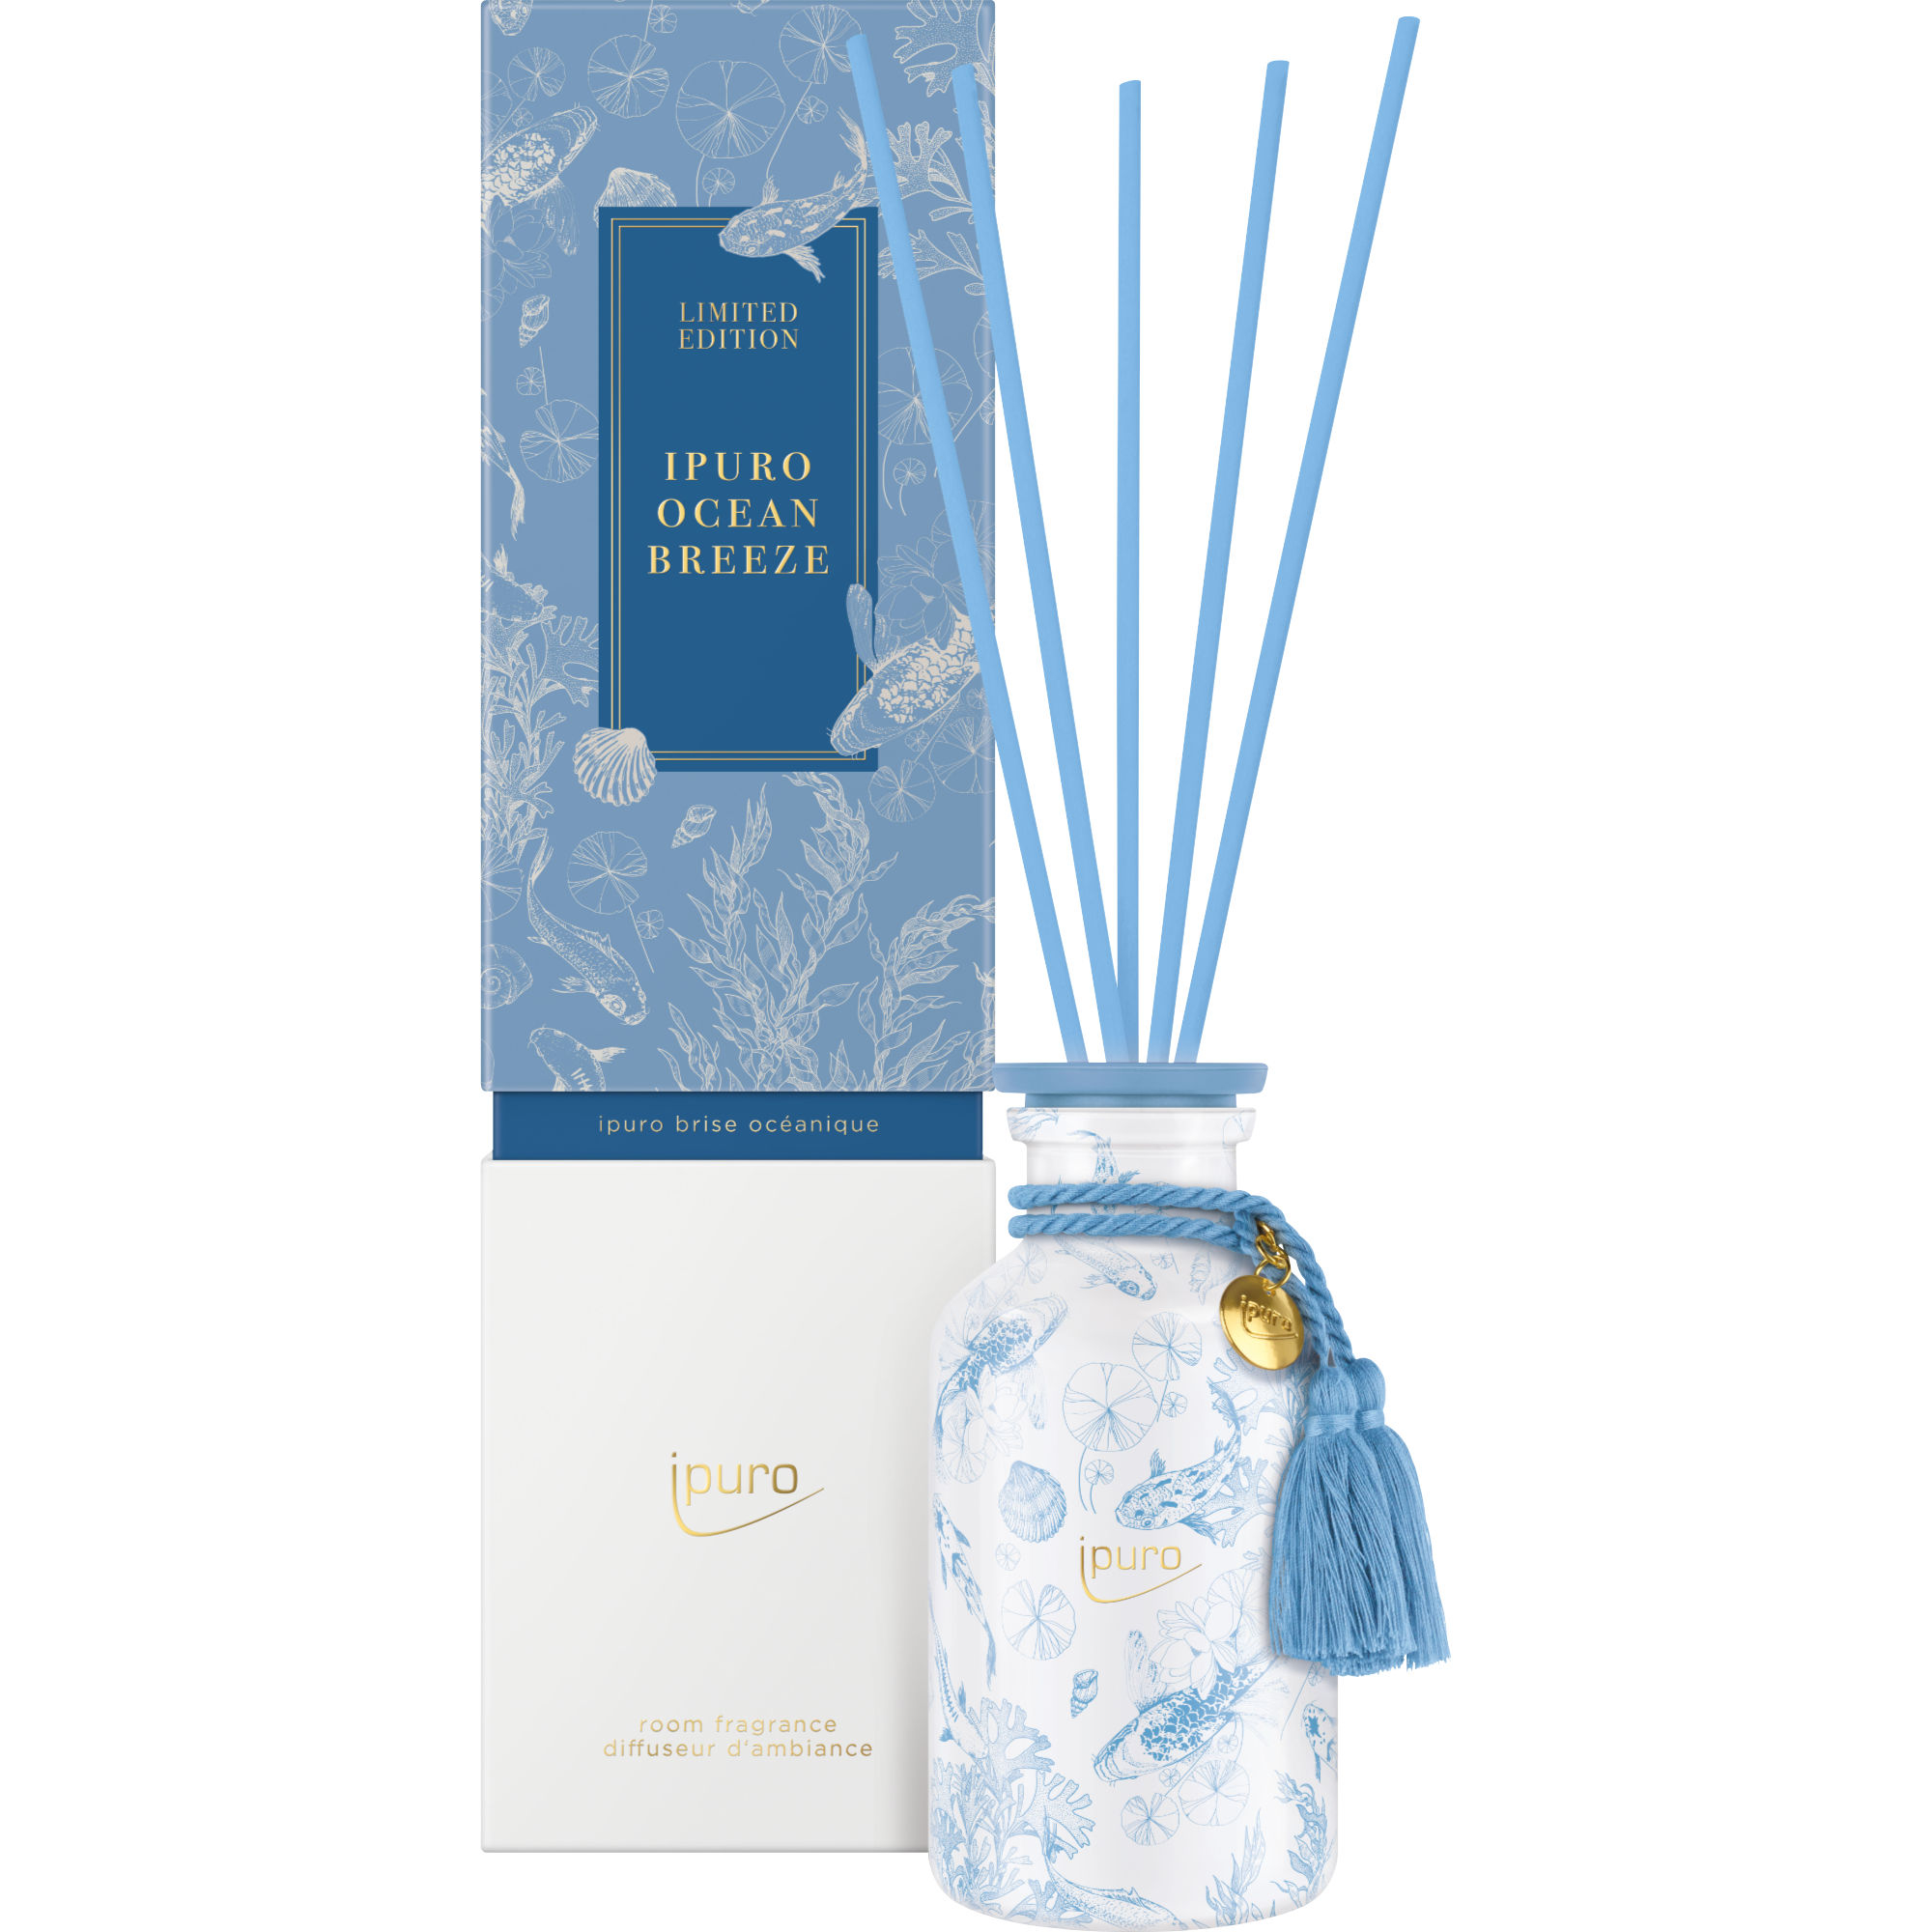 ipuro Limited Fragrance ocean breeze, 240ml - Buy online now